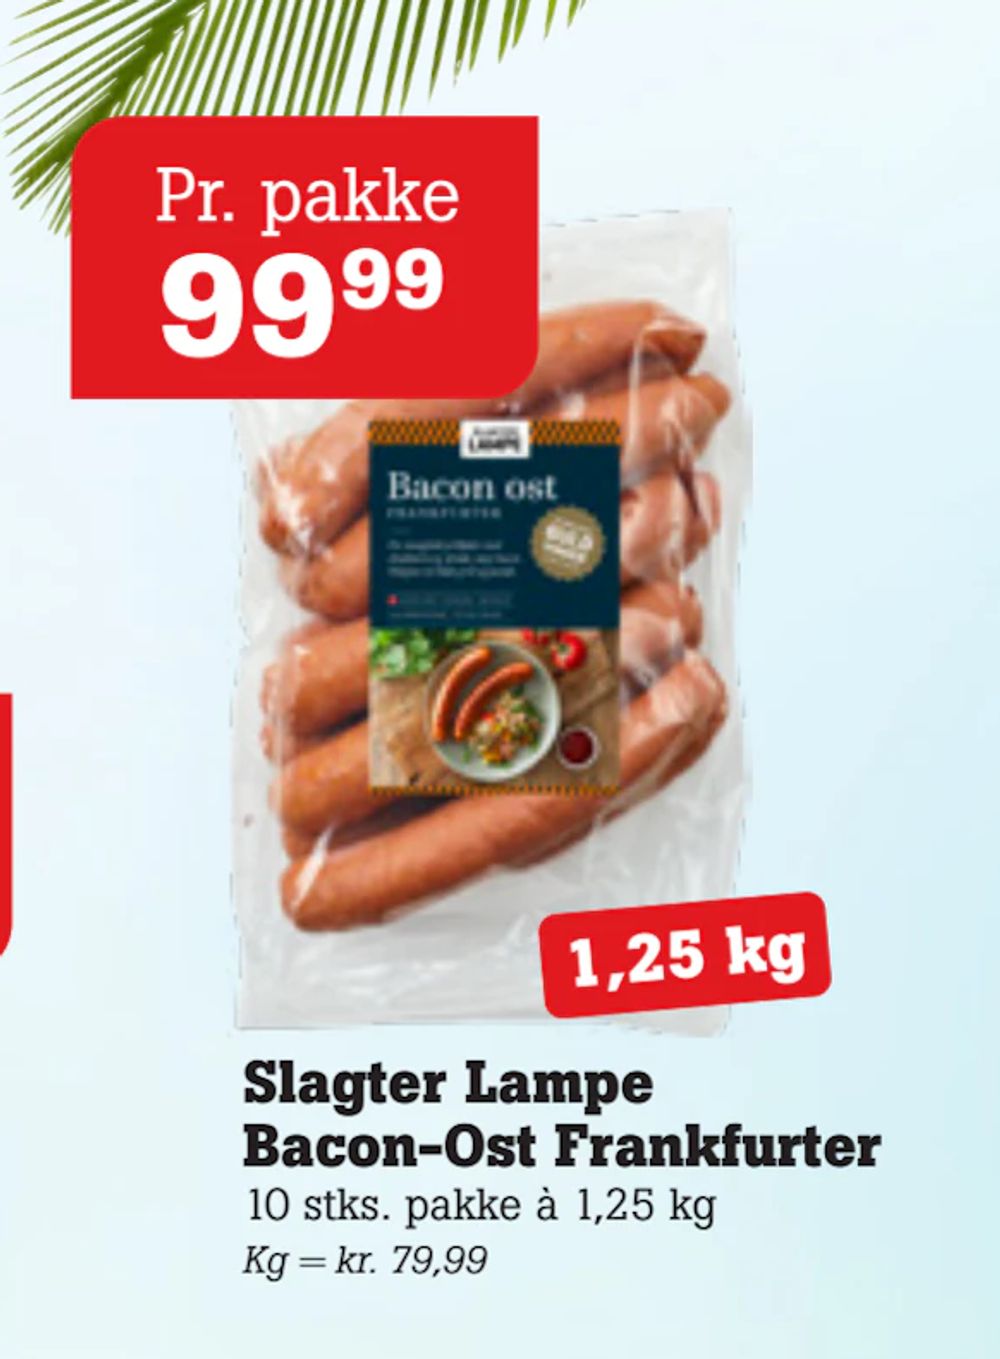 Tilbud på Slagter Lampe Bacon-Ost Frankfurter fra Poetzsch Padborg til 99,99 kr.